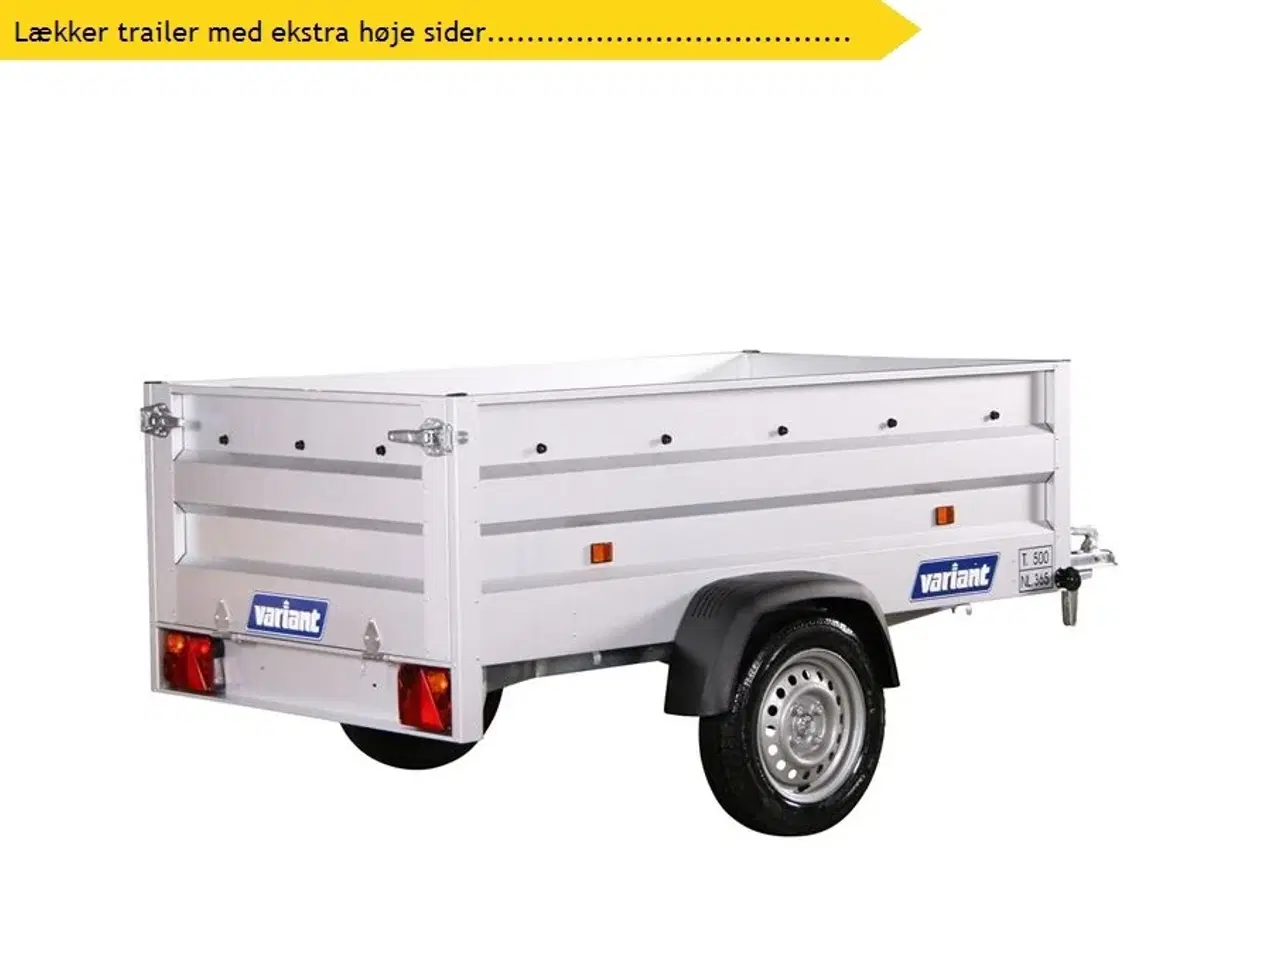 Billede 1 - 2024 - Variant 205 XL Ekstra høje sider   Nr. Plade 790,- kr.  Lækker trailer med ekstra høje sider